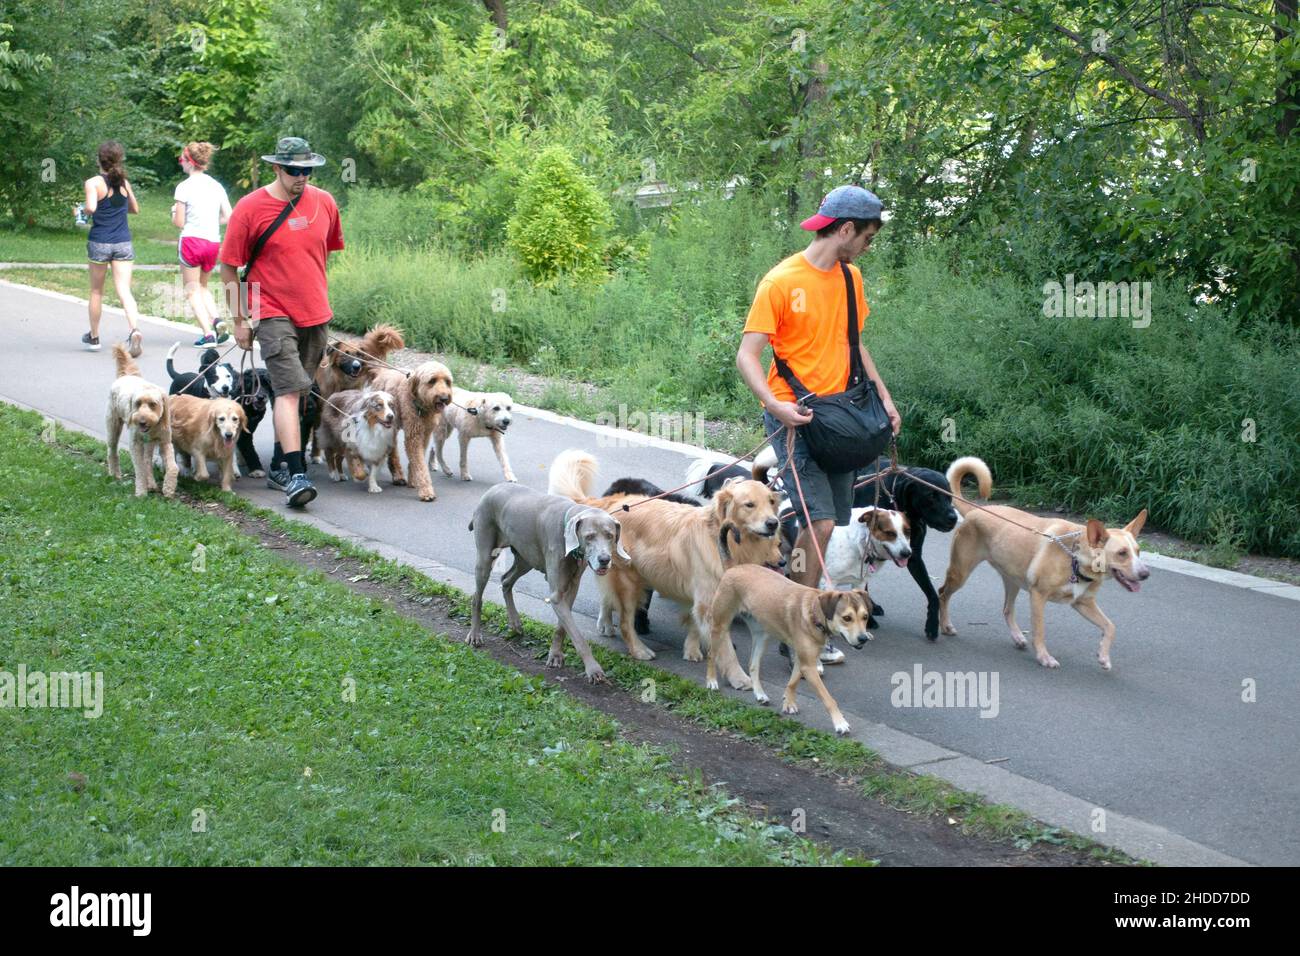 Perros bien educados fotografías e imágenes de alta resolución - Alamy